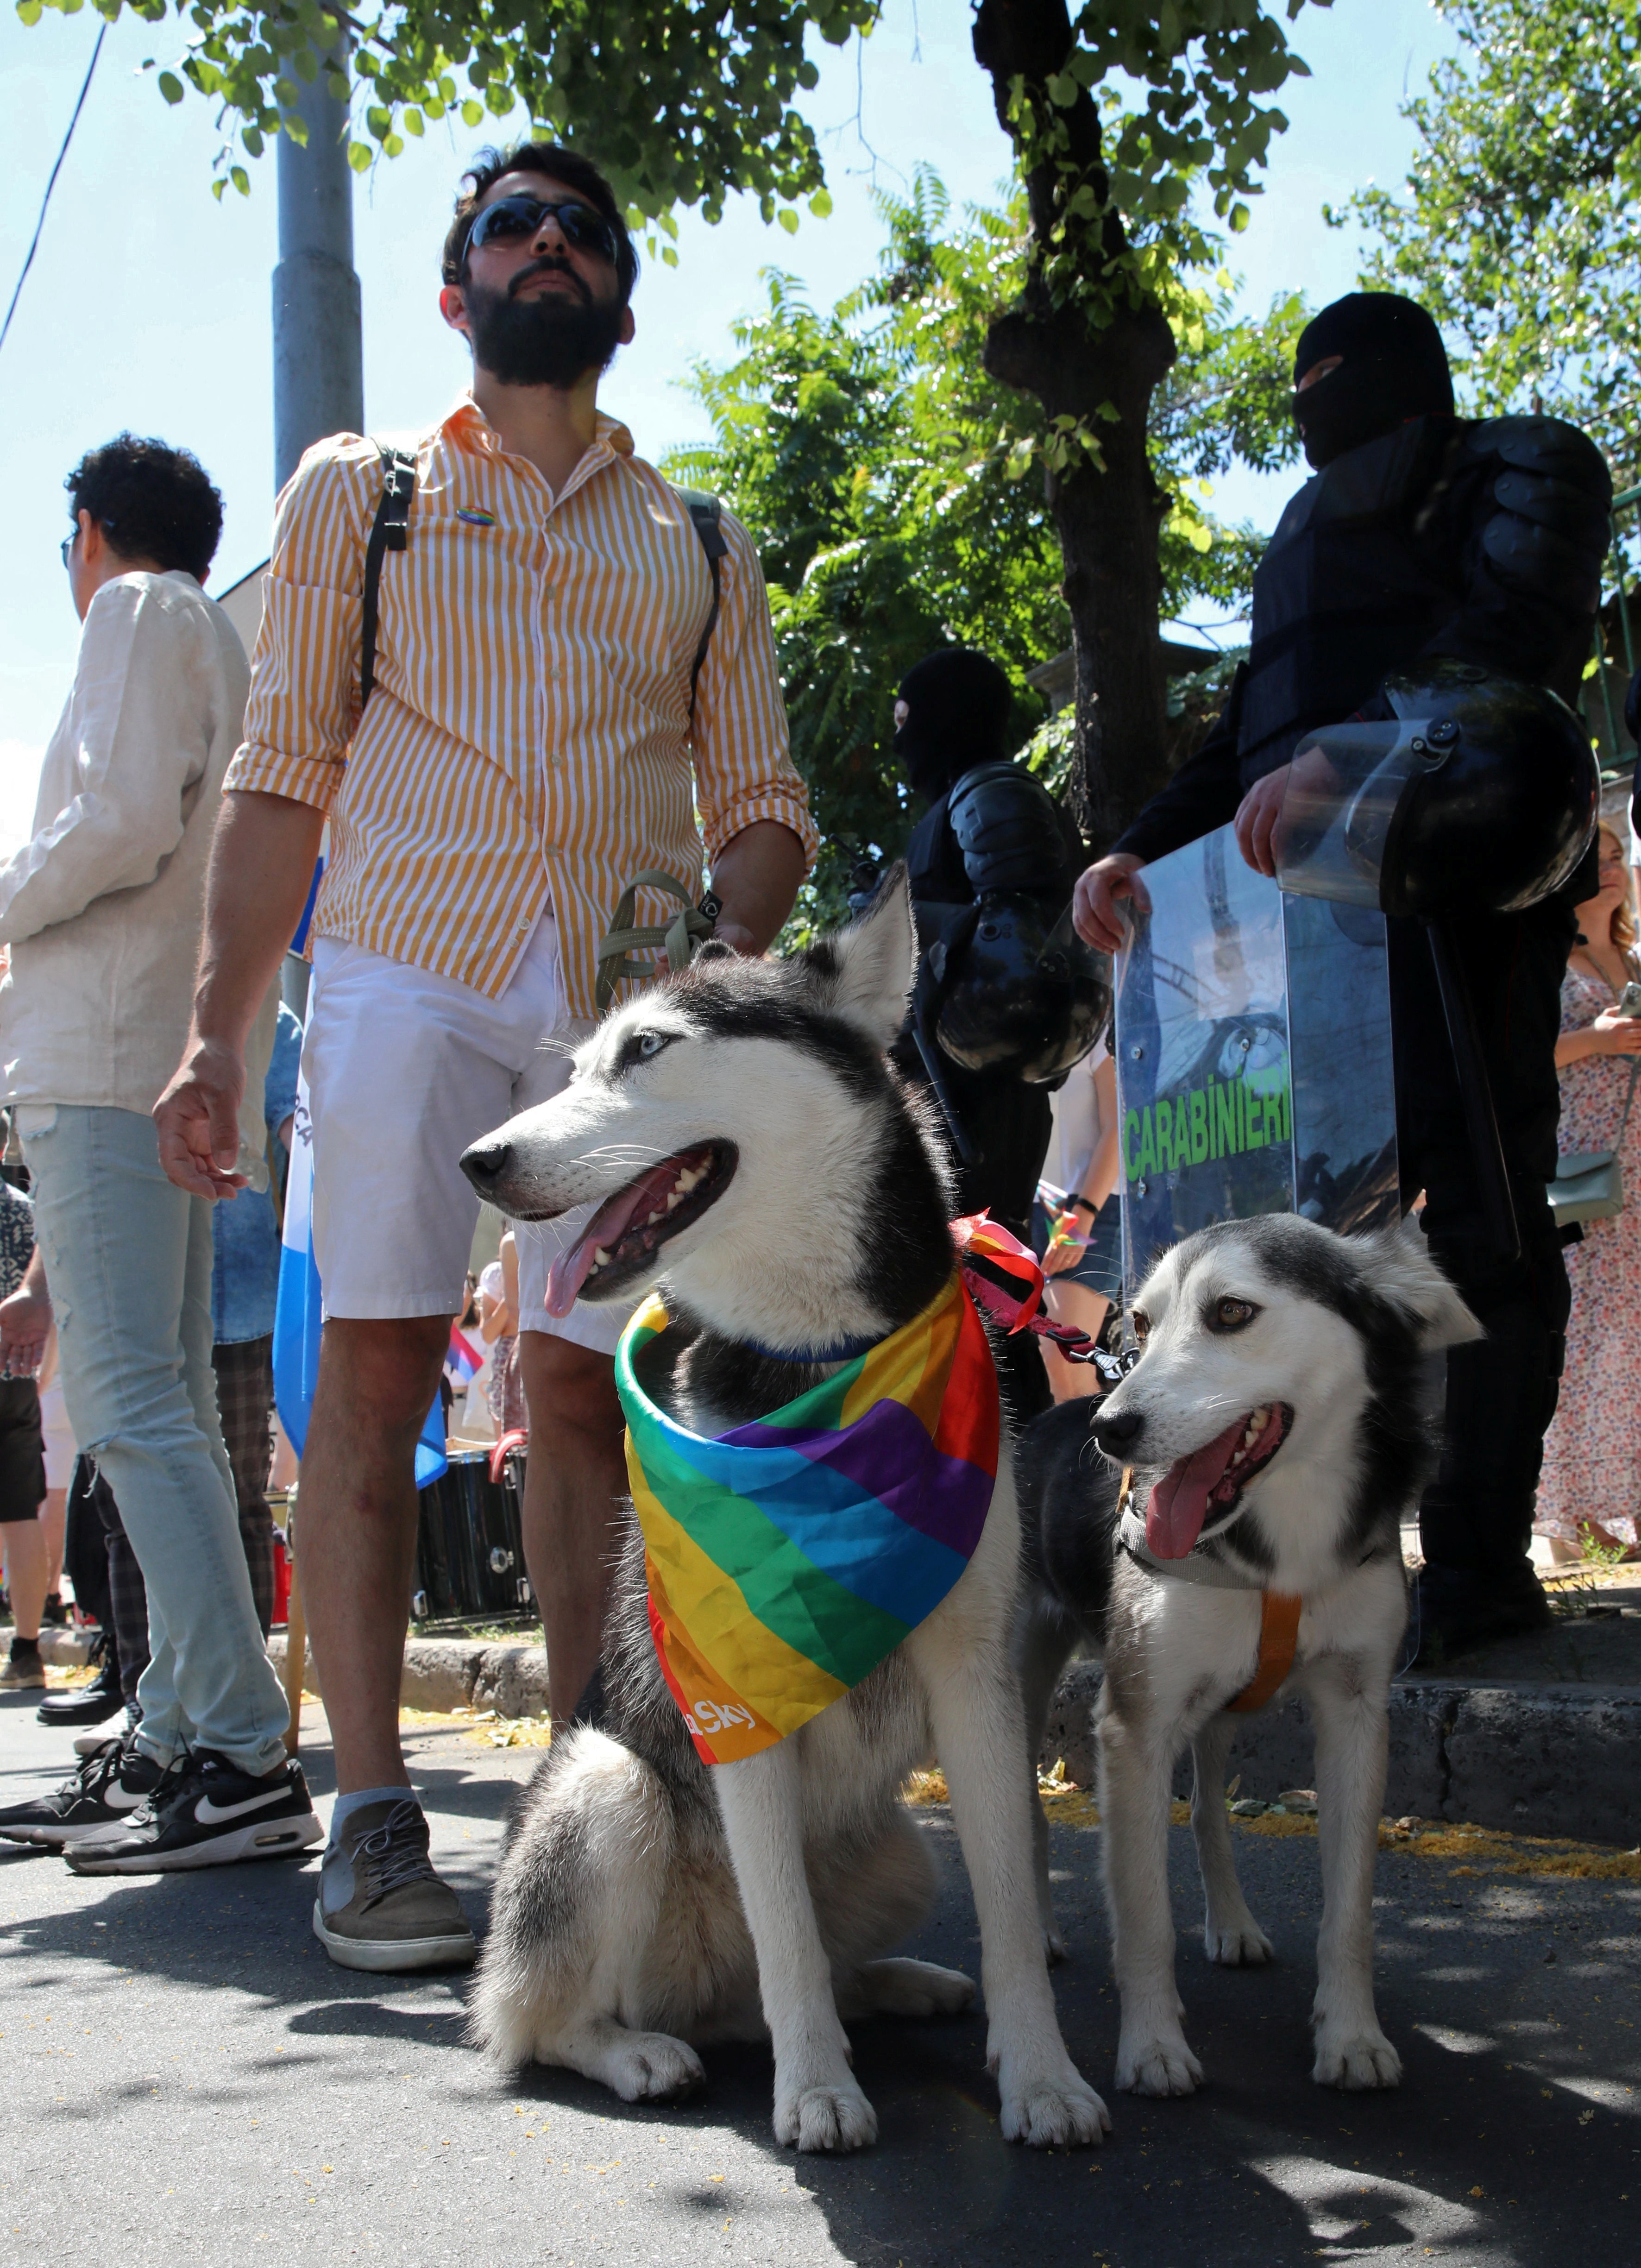 Perro gay”: ovacionan a un en marcha LGBT+ Guadalajara - Infobae